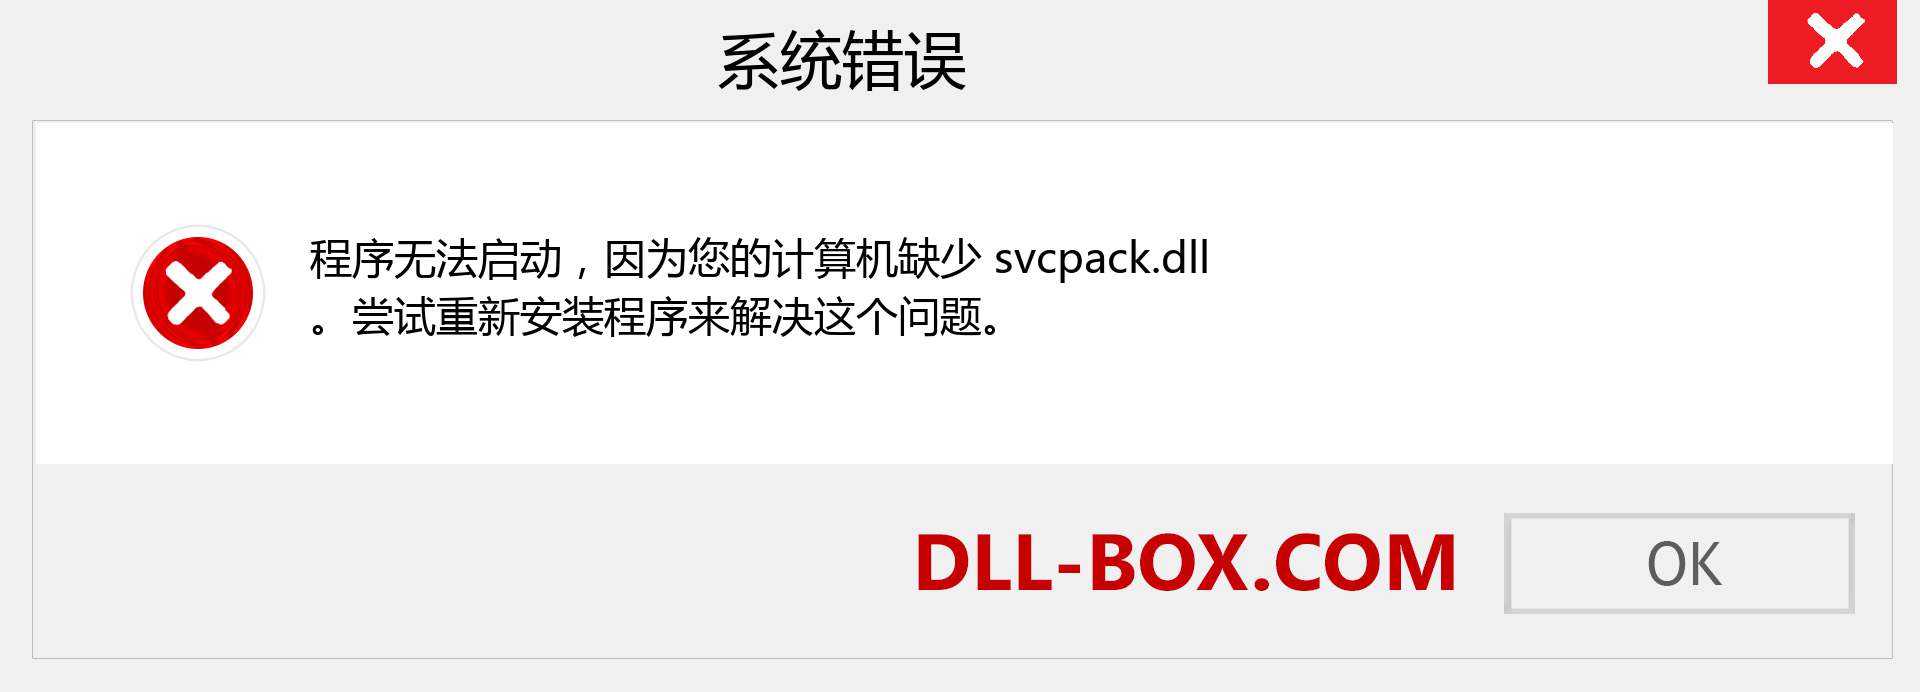 svcpack.dll 文件丢失？。 适用于 Windows 7、8、10 的下载 - 修复 Windows、照片、图像上的 svcpack dll 丢失错误